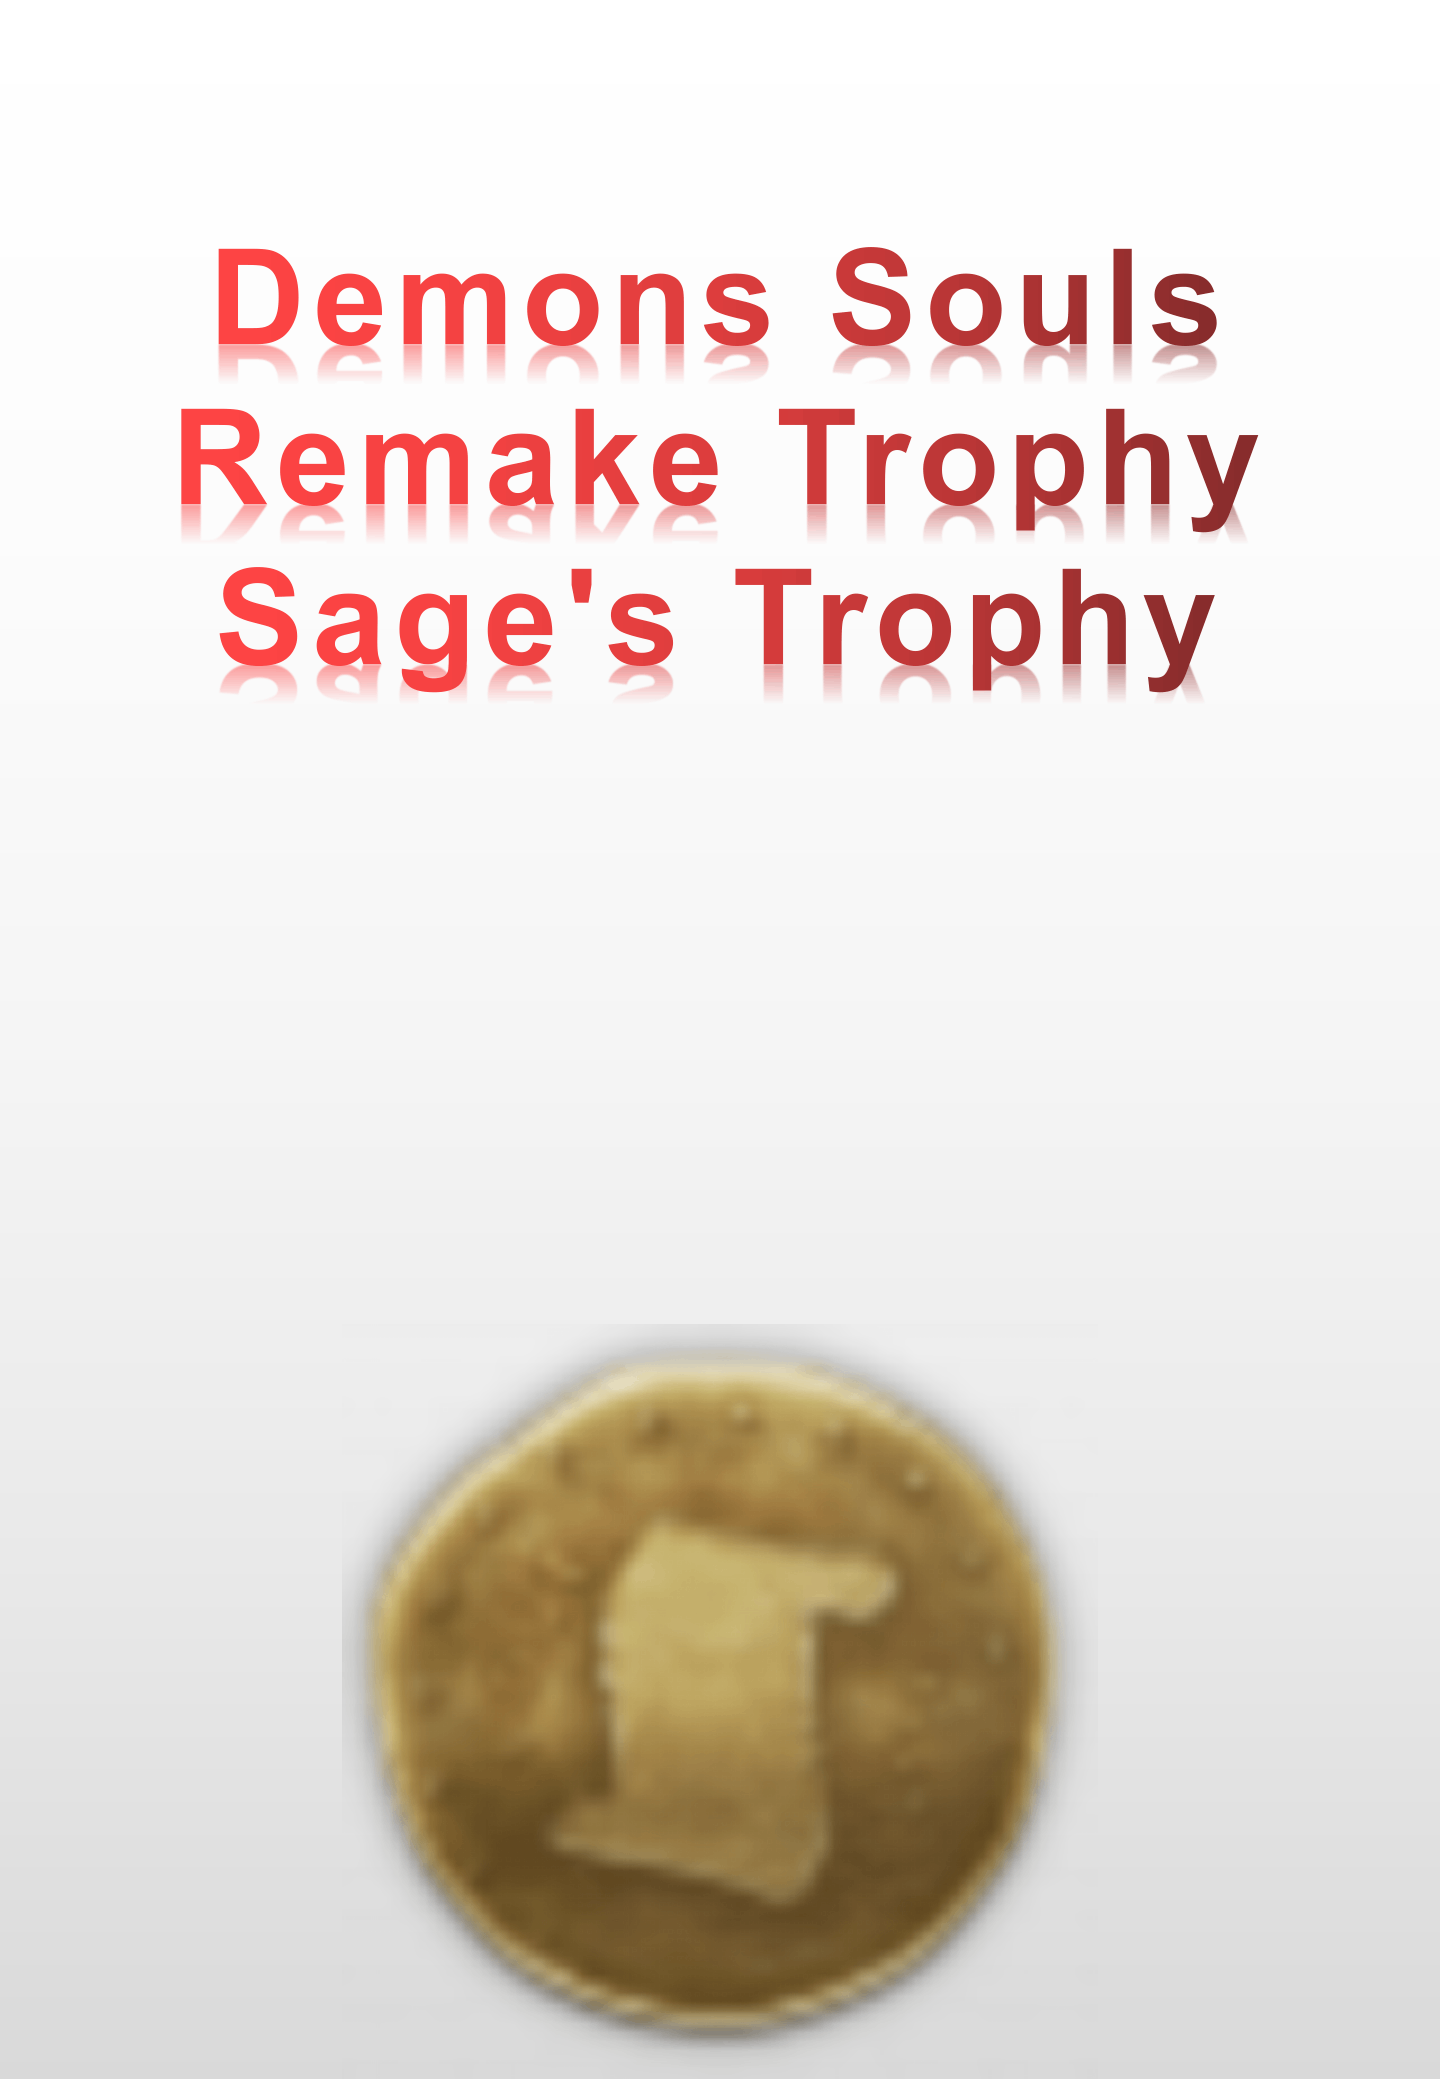 Demons Souls Remake Trophy - Sage's Trophy